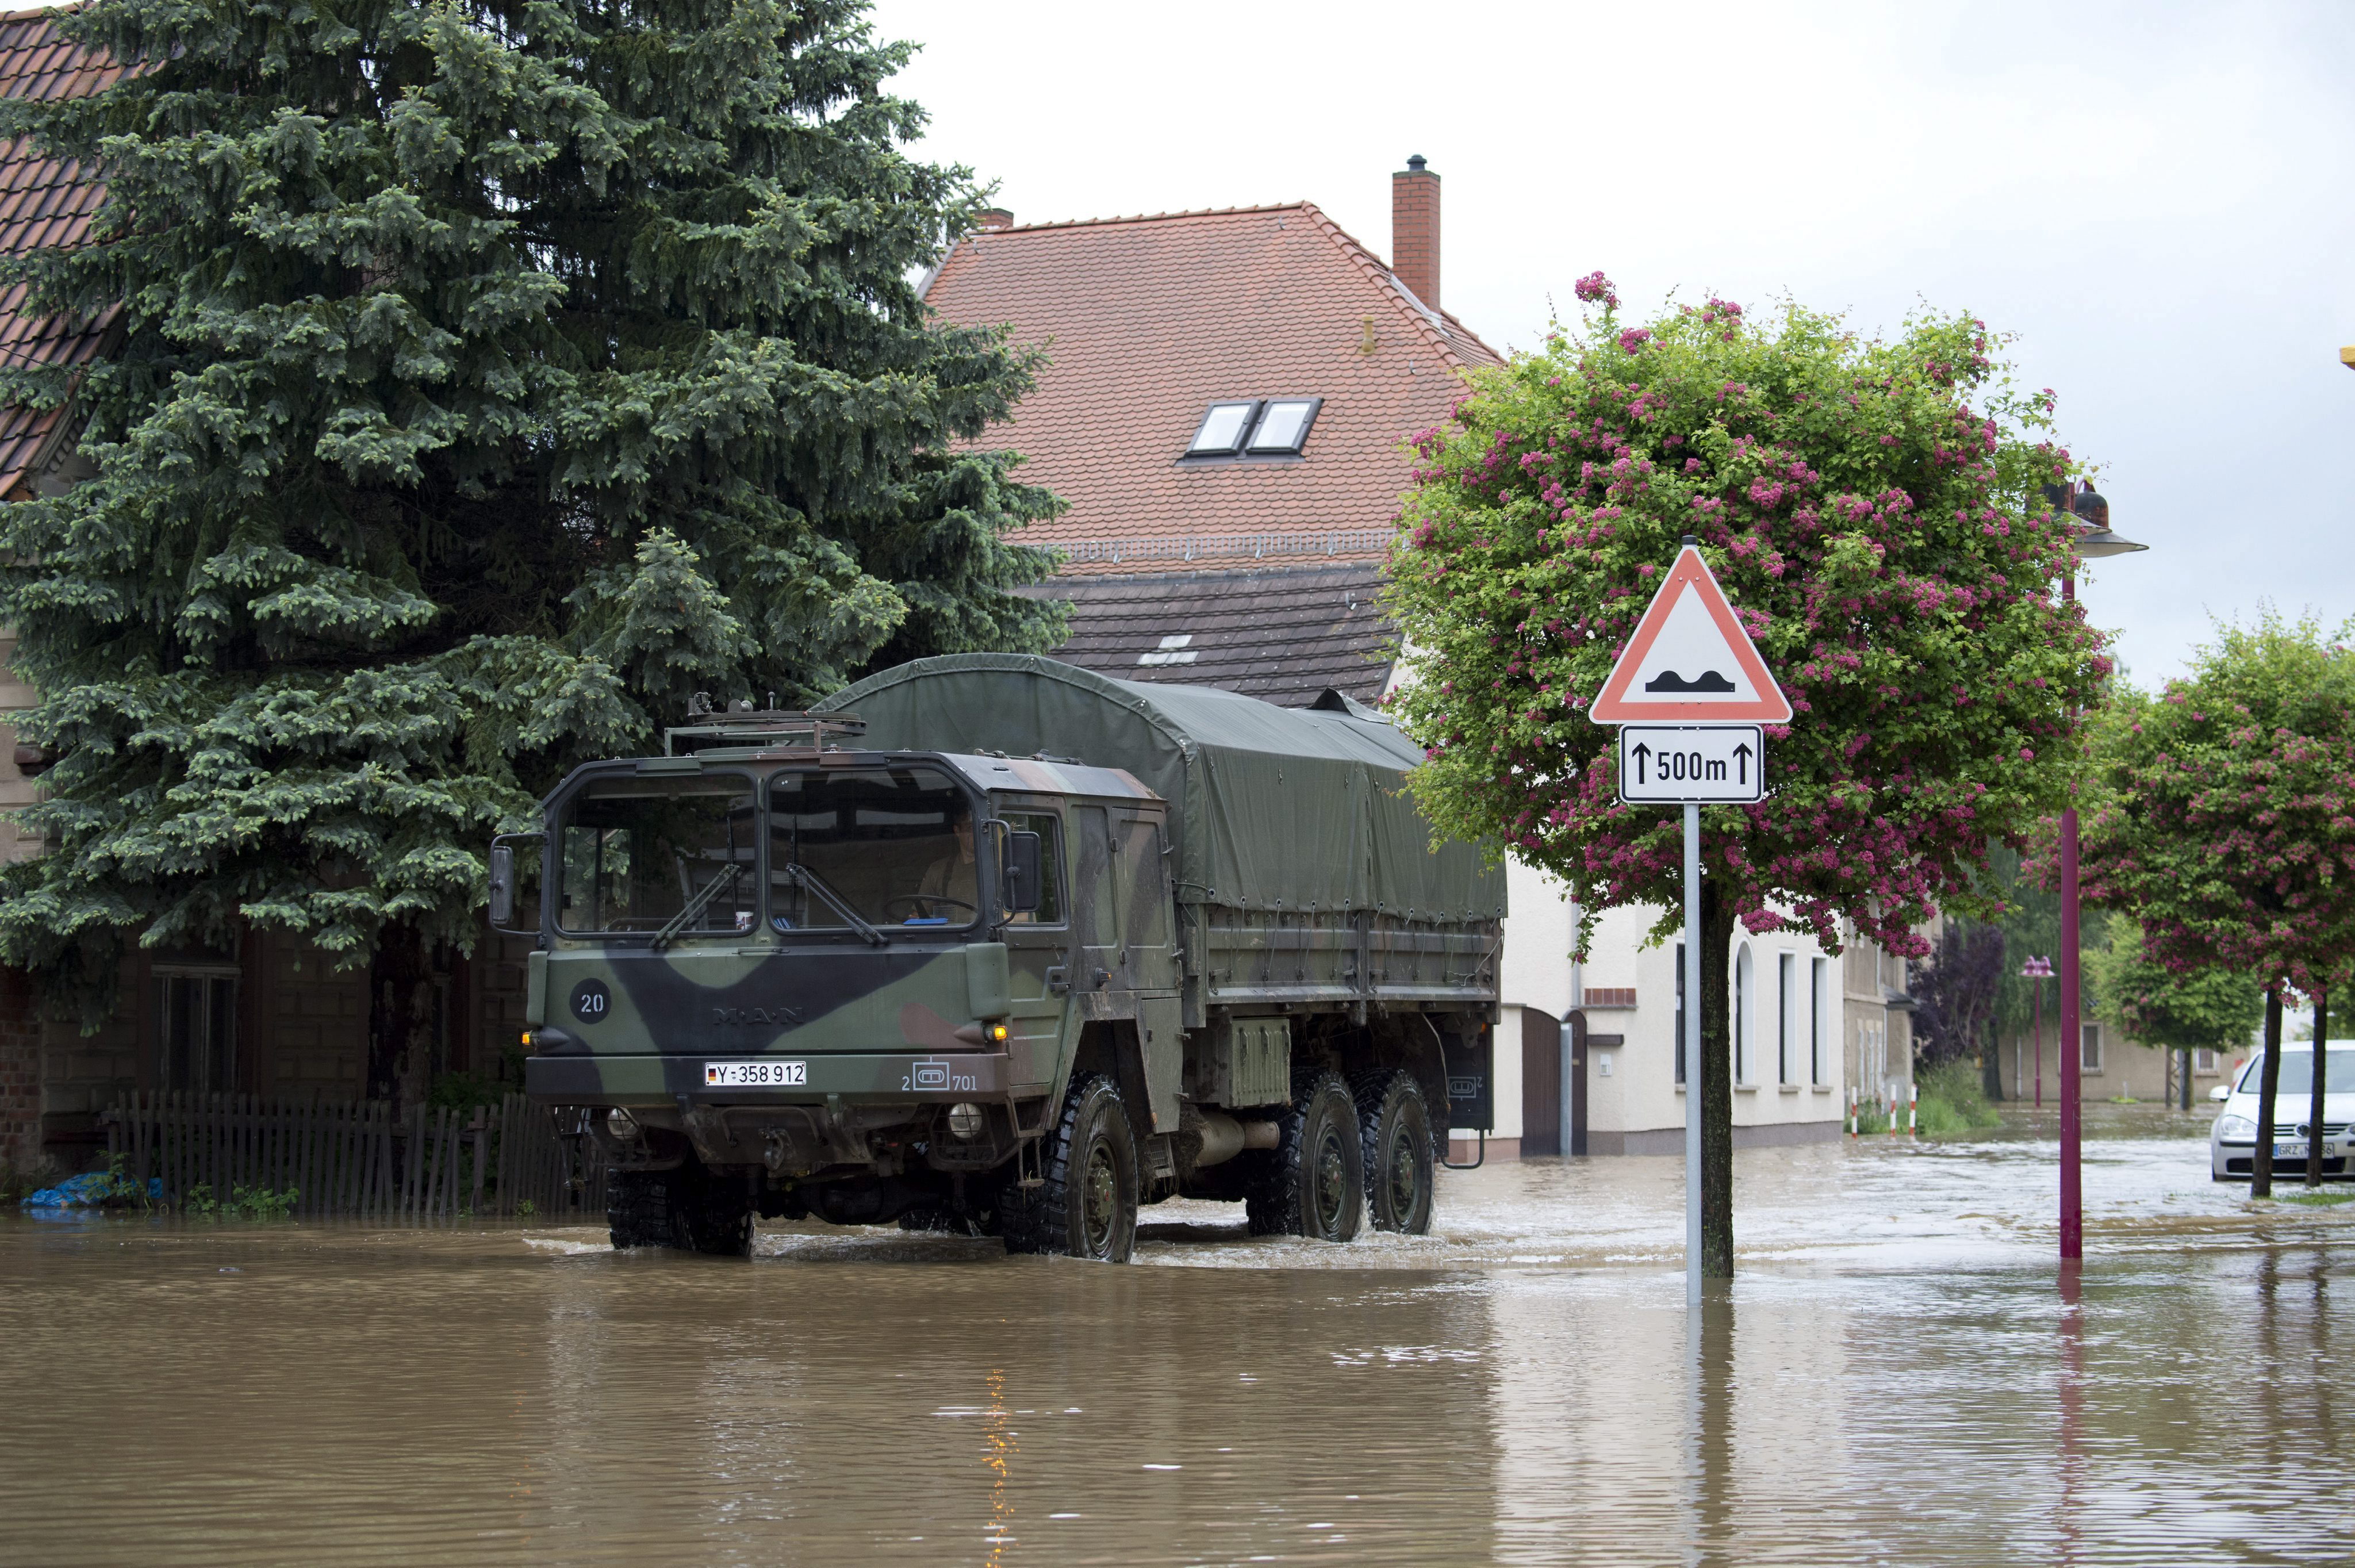 Merkel viajará mañana a las regiones alemanas afectadas por las inundaciones